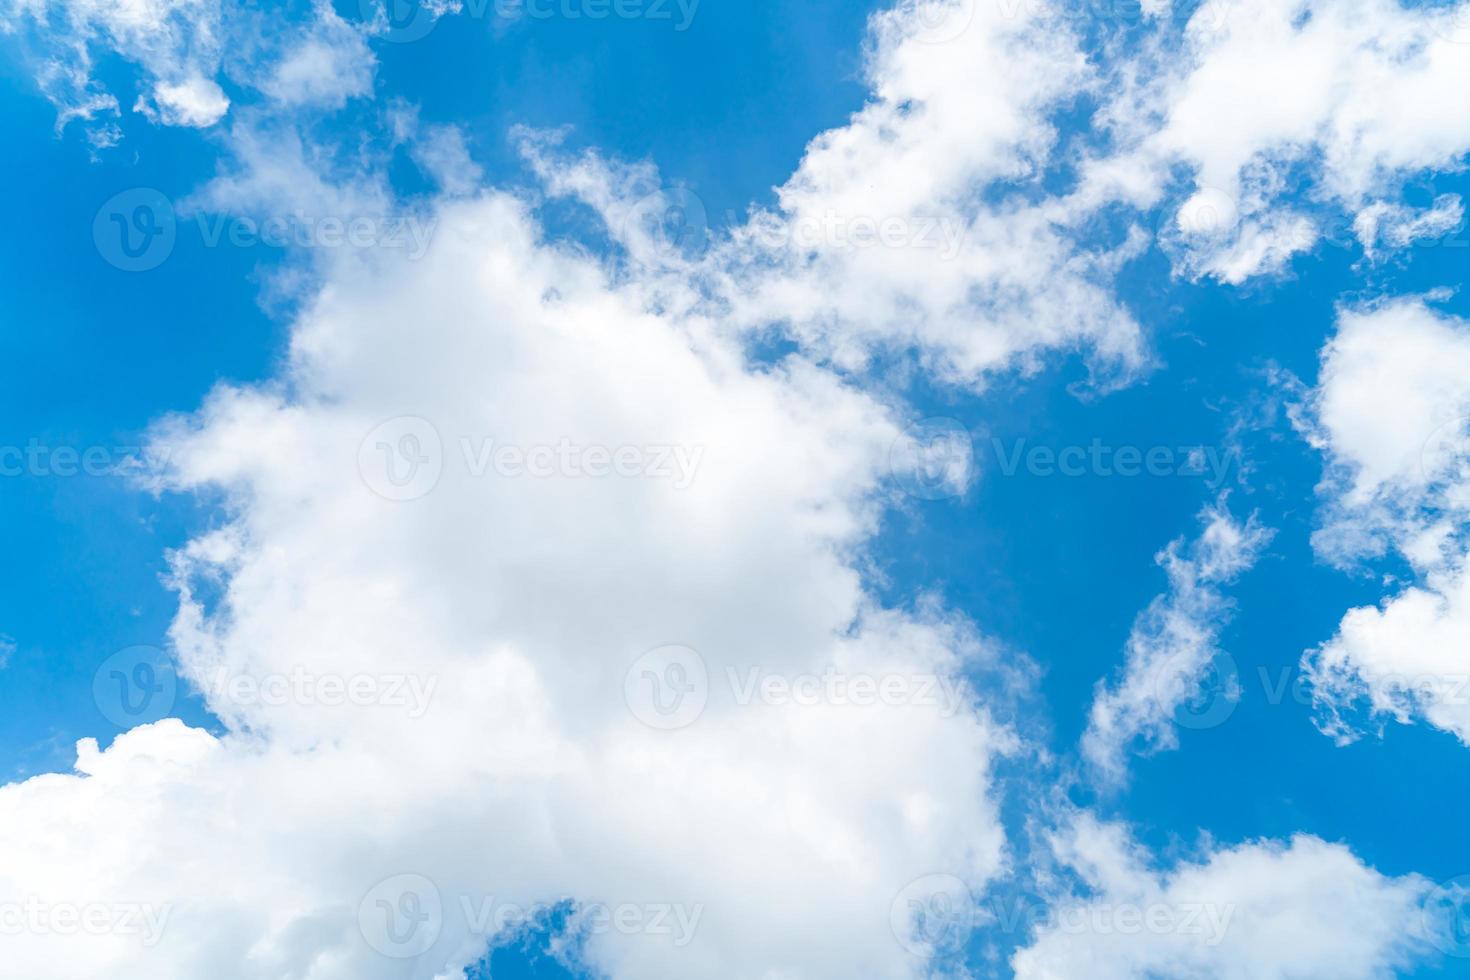 gordijn talent Carrière mooie blauwe lucht en wolken 4632491 Stockfoto